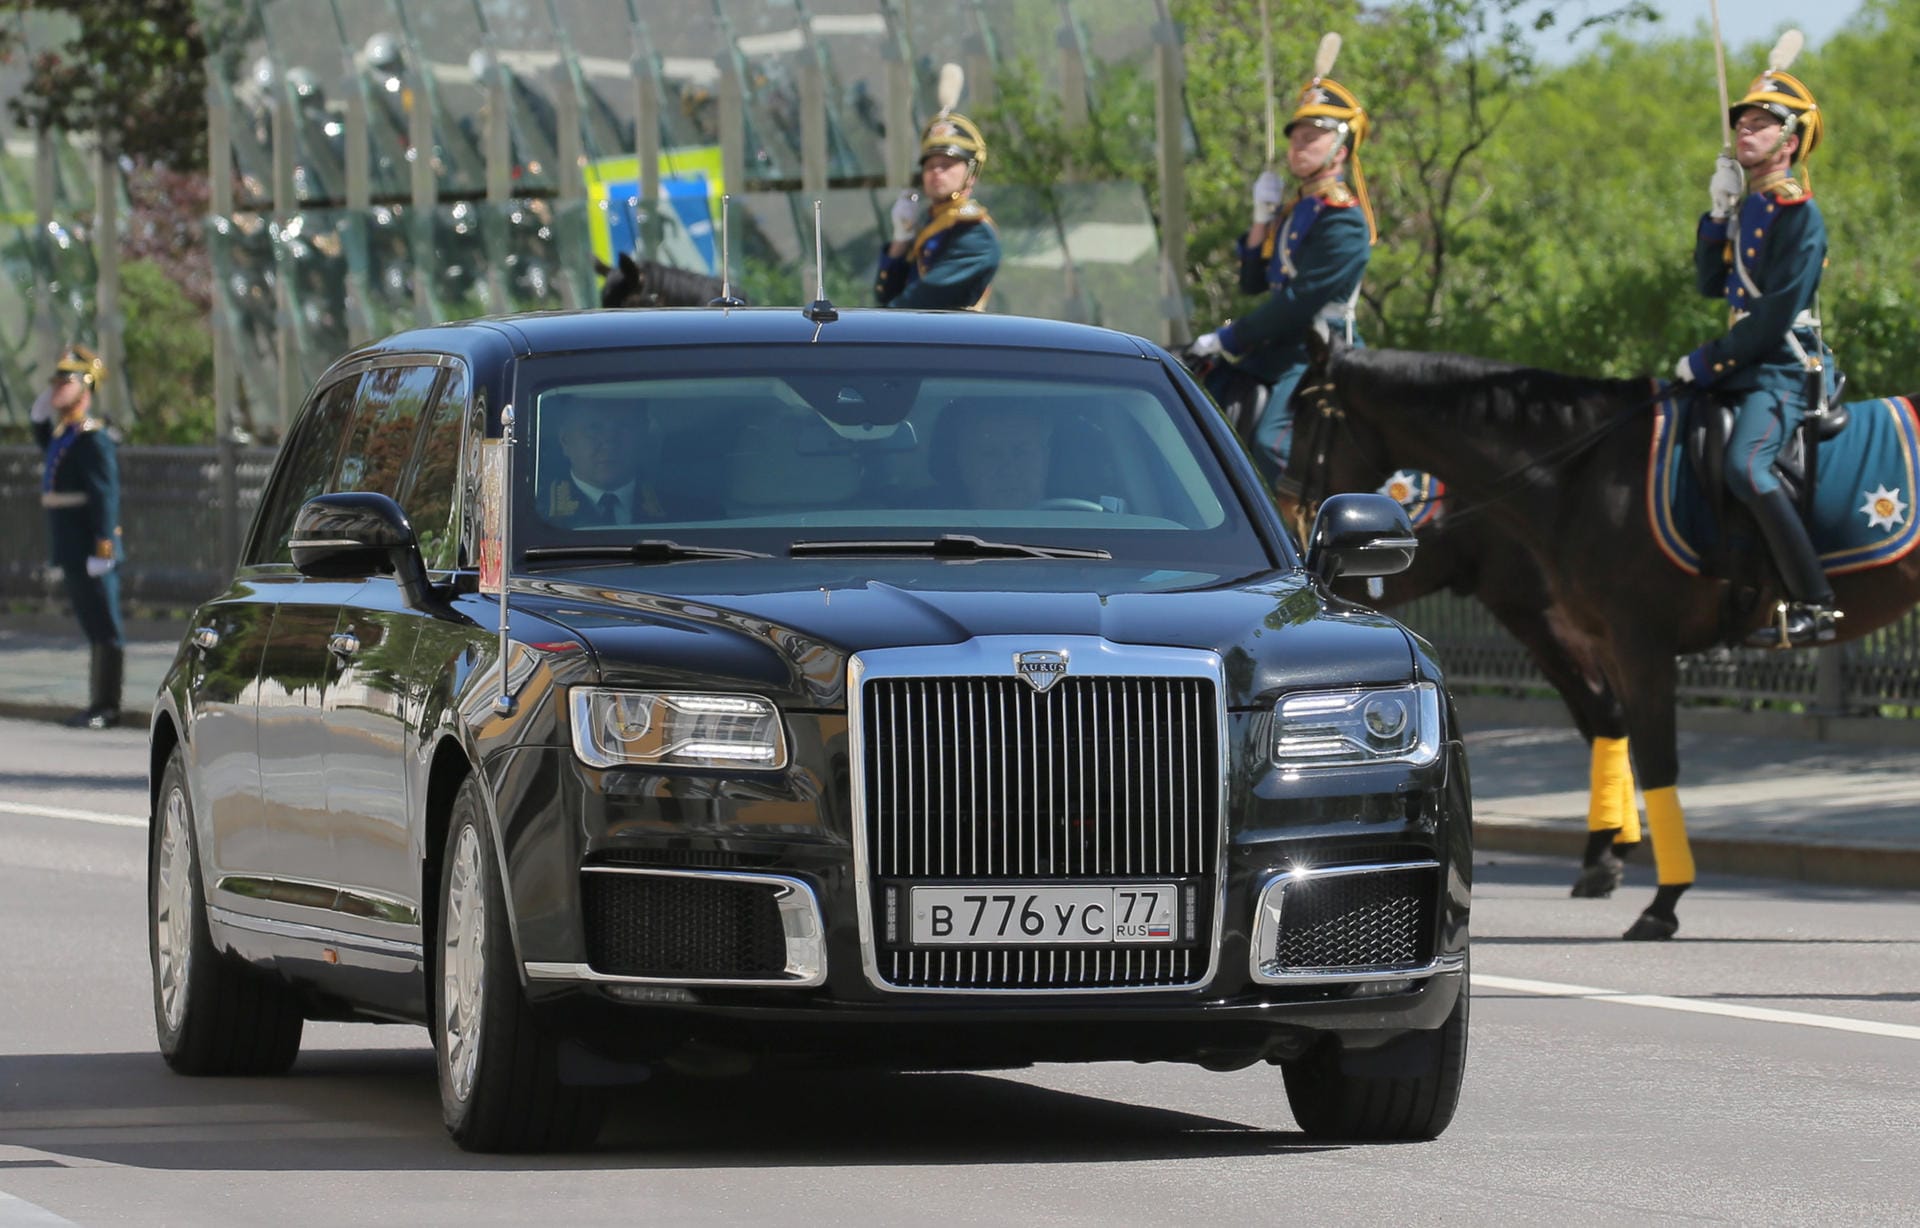 Russlands Antwort auf "The Beast": Putin fuhr erstmals in seiner neuen Staatslimousine vom Typ Aurus vor. Die Nobelkarosse soll einen 6,6-Liter-Motor mit über 800 PS Leistung unter der Haube haben.